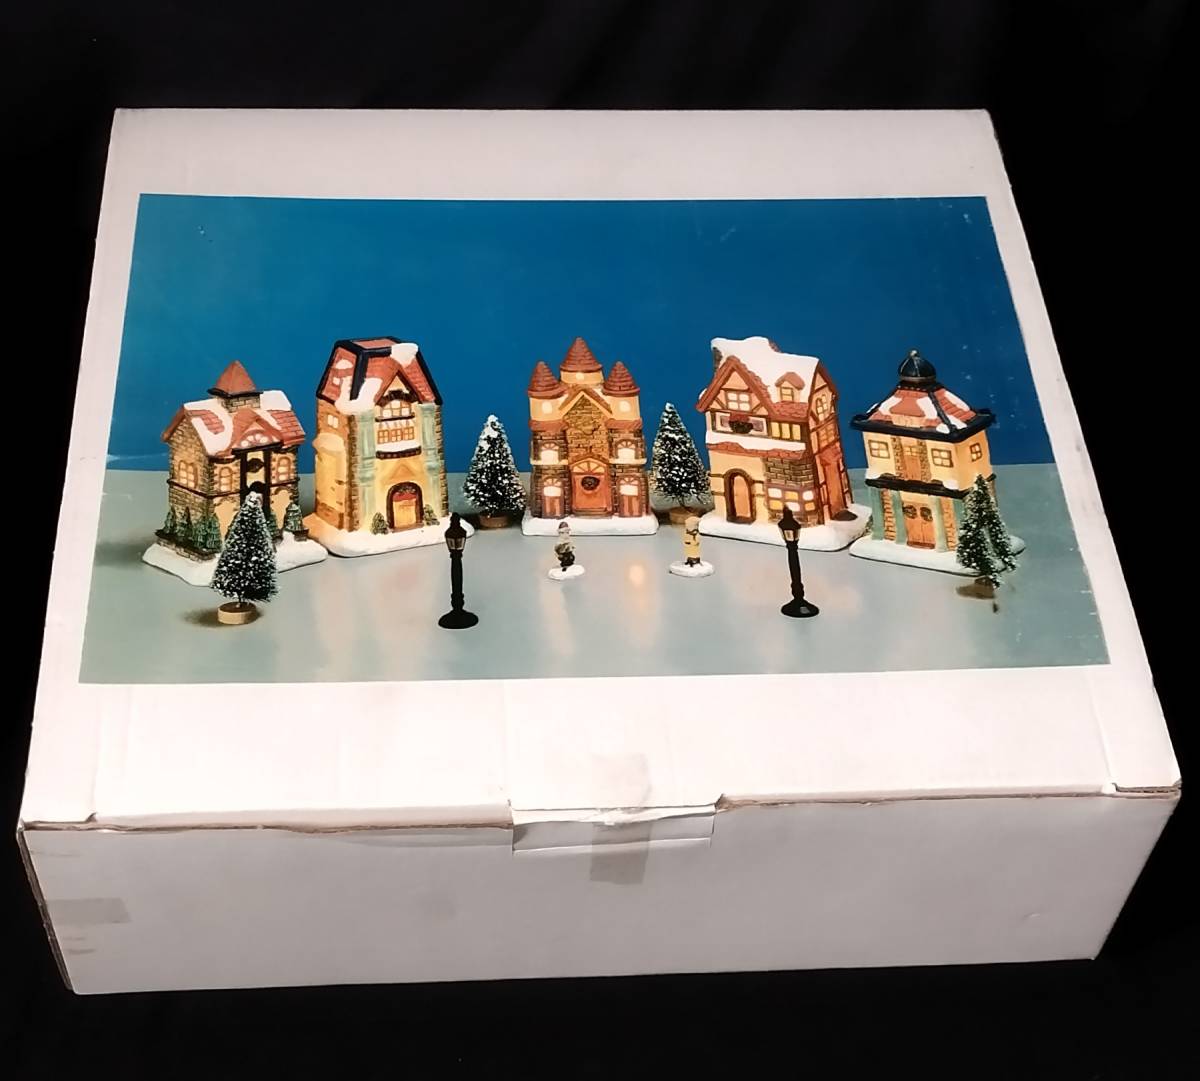 クリスマス オブジェ オーナメント 「クリスマスの街並み」ライトハウス ミニチュアハウス デコレーション の画像1